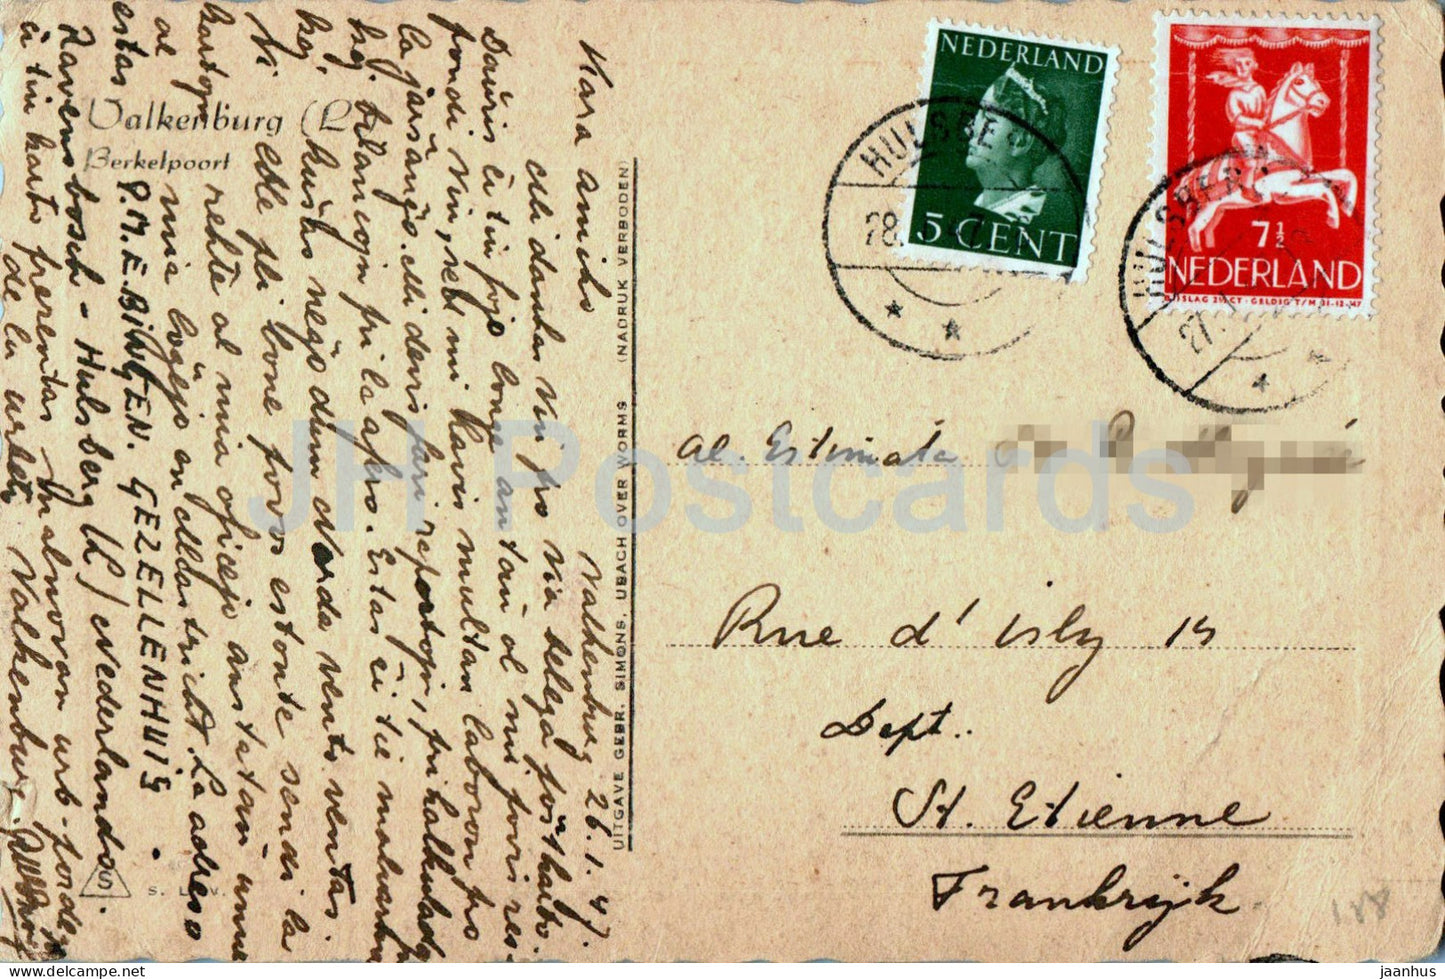 Valkenburg - Berkelpoort - Berkel-Tor - Illustration - alte Postkarte - 1947 - Niederlande - gebraucht 